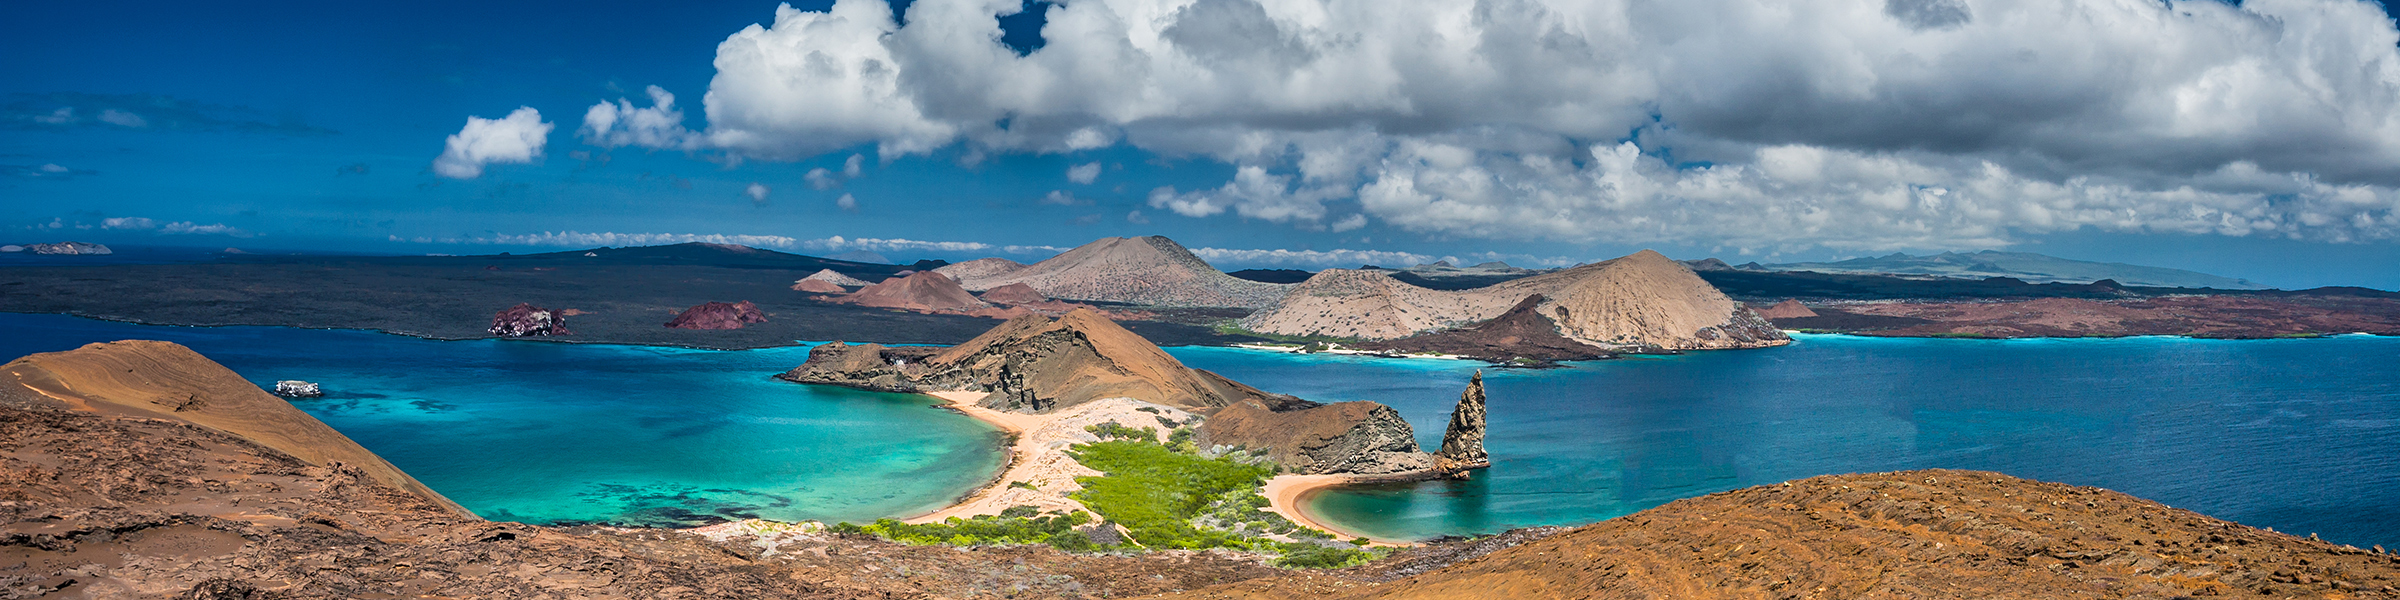 Ecuador Galápagos Islands